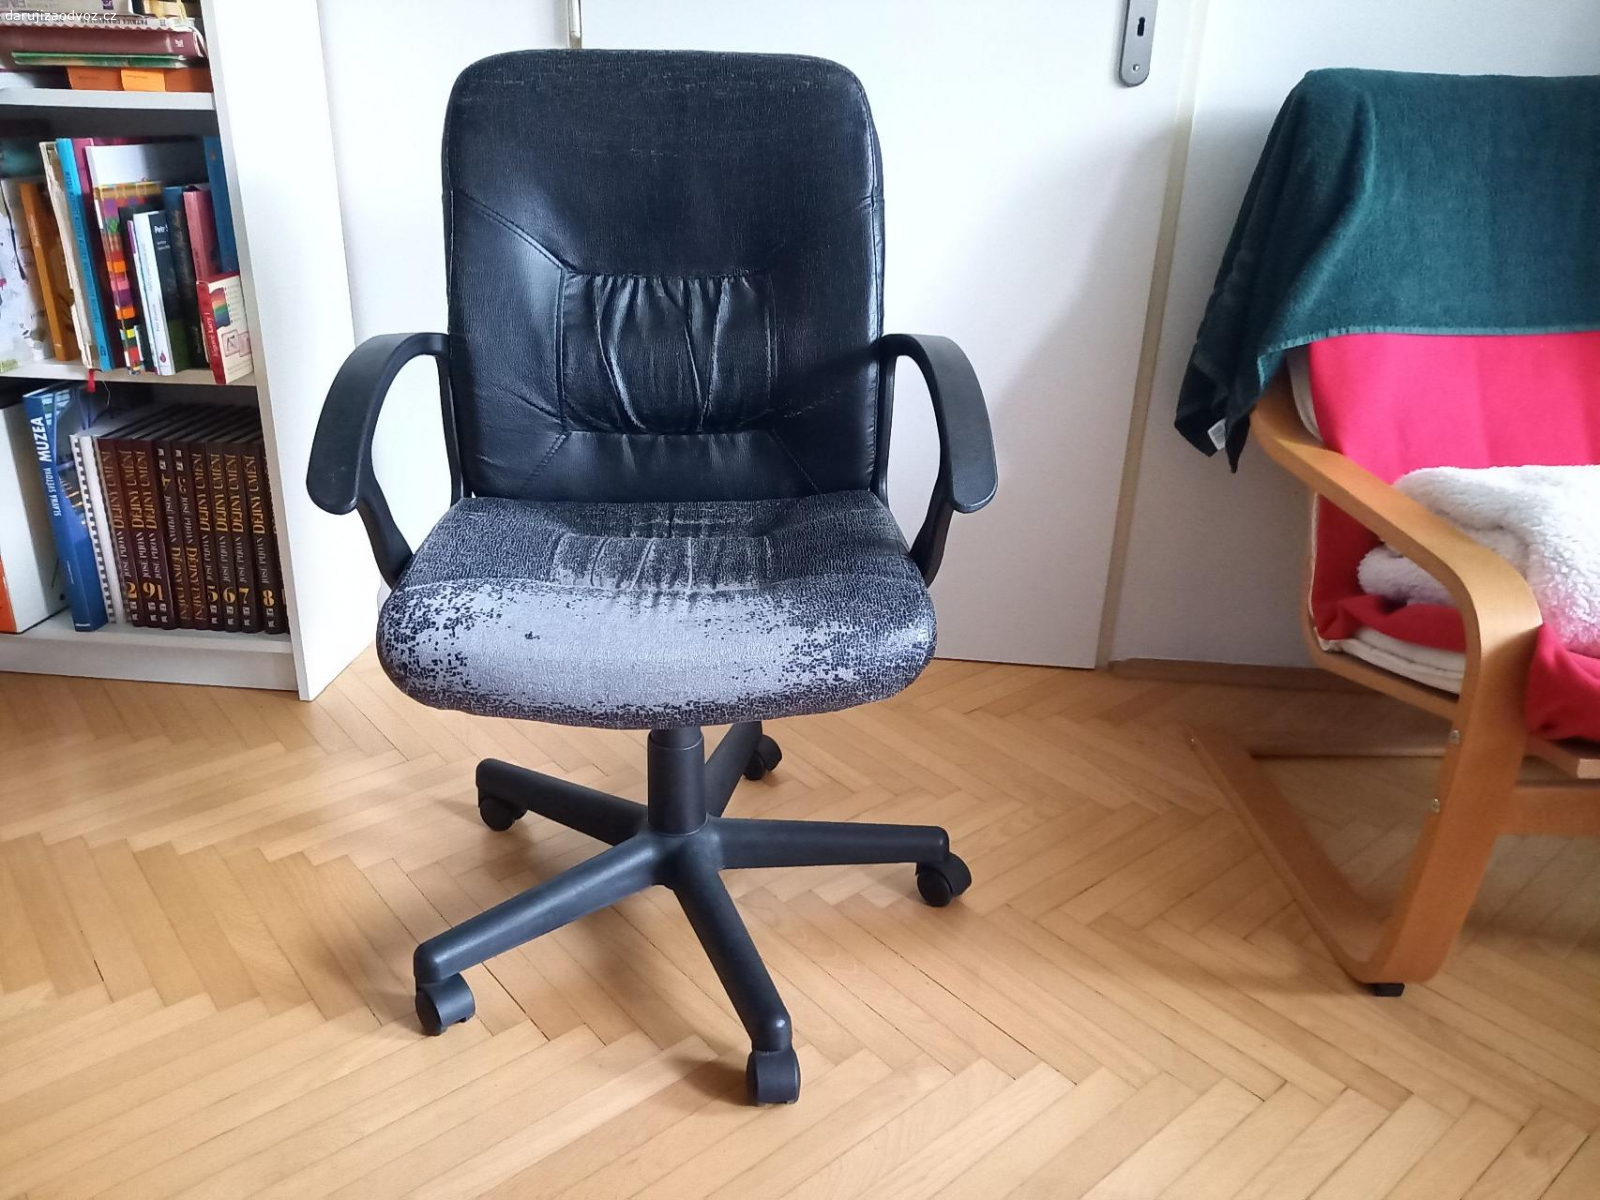 Daruji kancelářskou židli. Daruji kancelářskou židli zn. Ikea. Má oloupaný koženkový potah, jinak je zcela funkční.